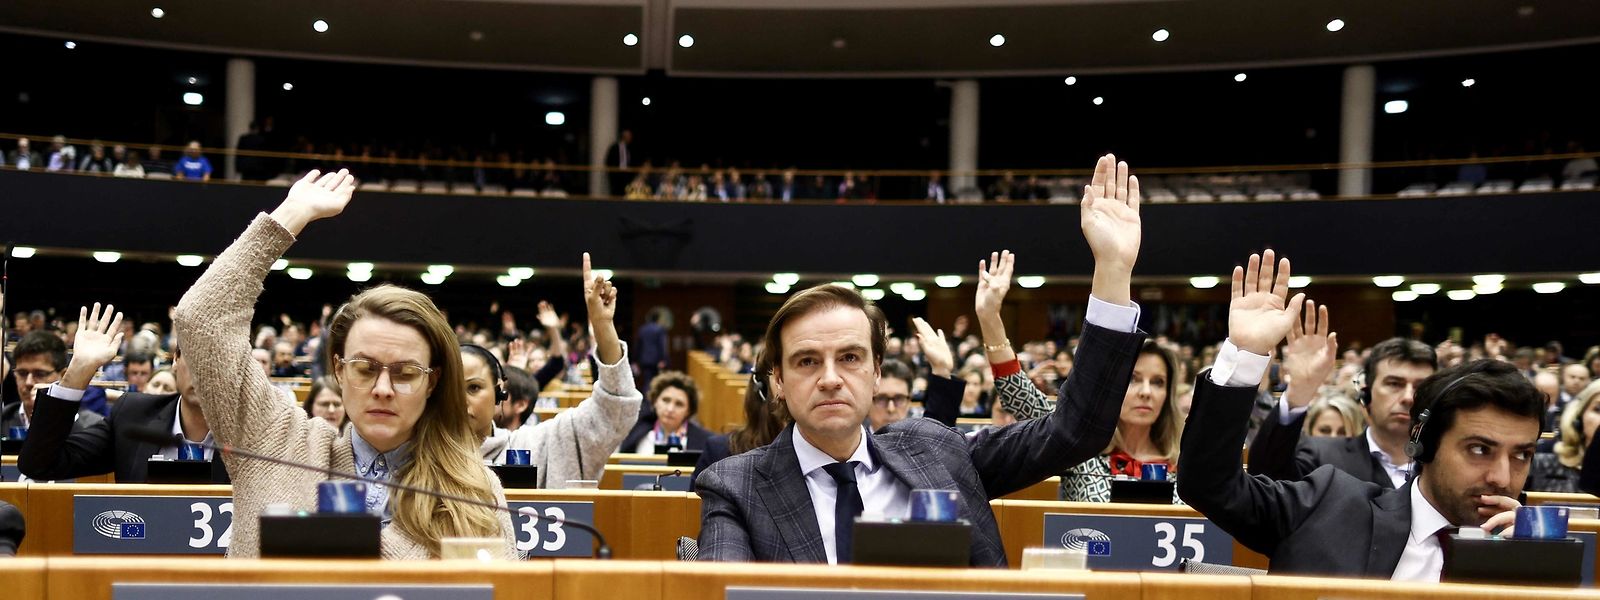 Le Parlement européen a levé jeudi l'immunité de deux eurodéputés visés par la justice belge dans le scandale de corruption présumée au profit du Qatar et du Maroc.